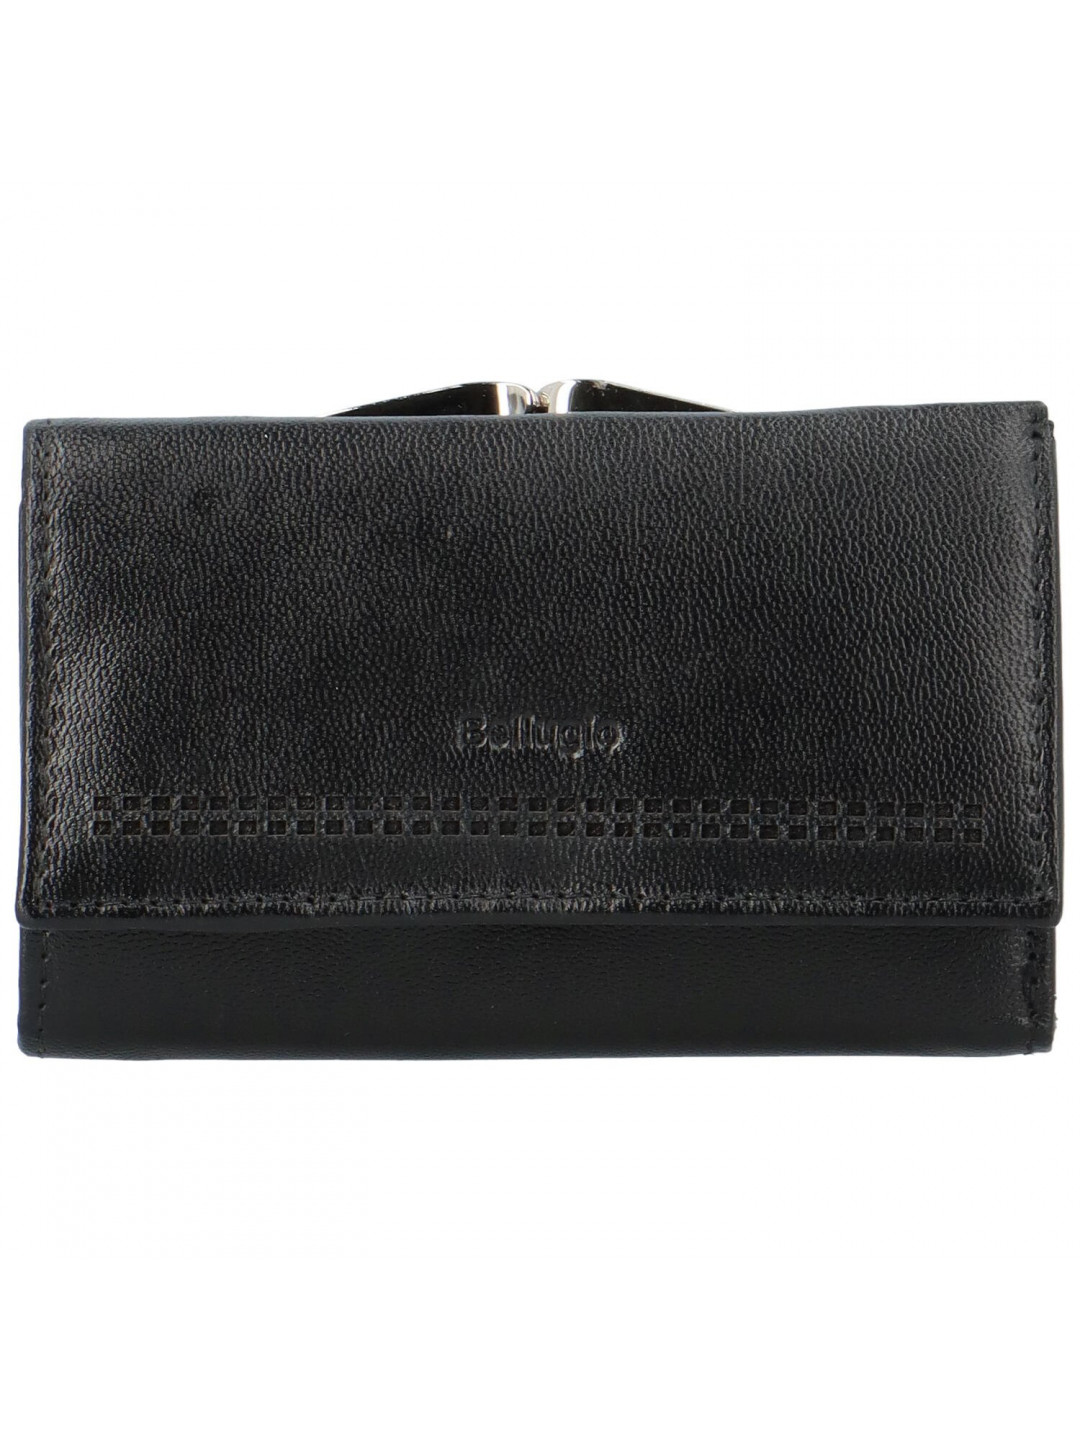 Dámská kožená peněženka černá – Bellugio Xagnana